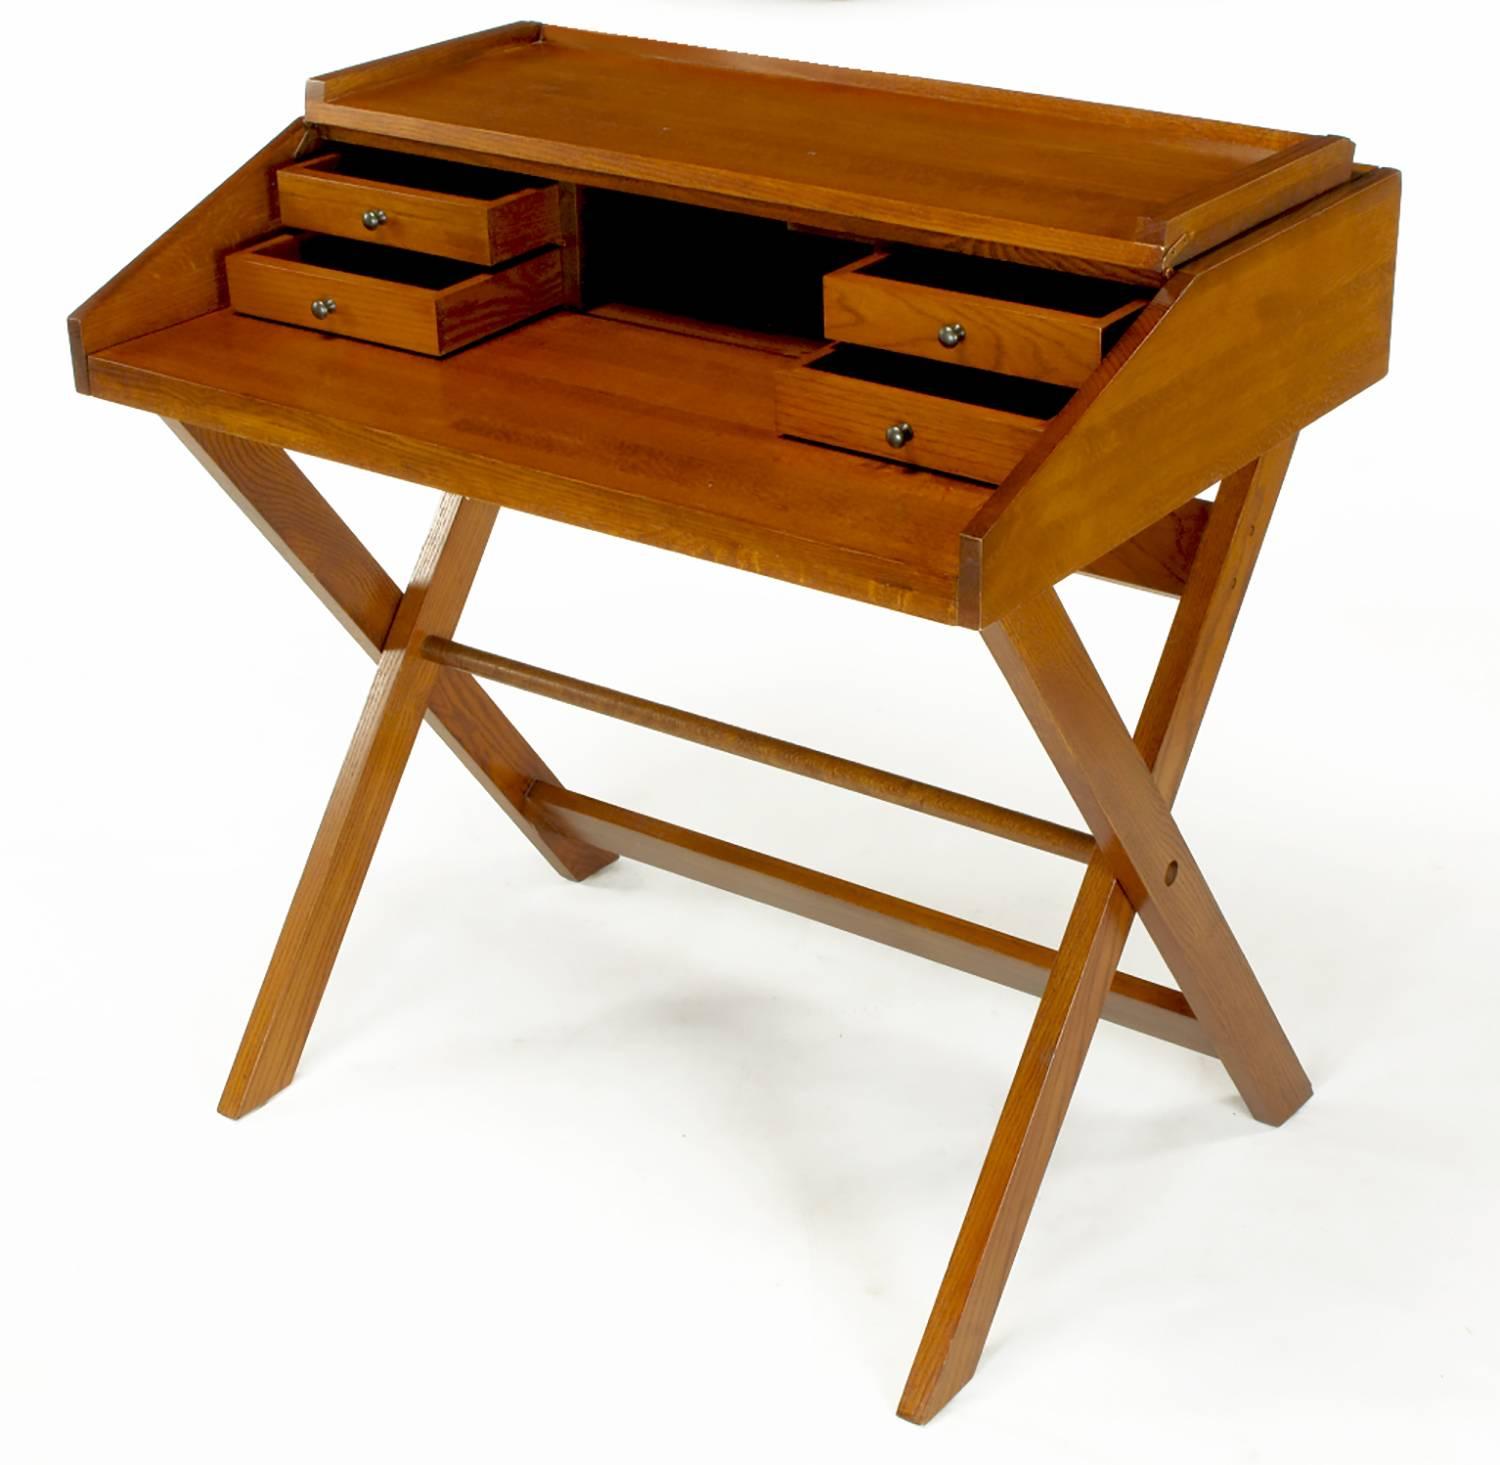 Flip-Top-Schreibtisch aus Eschenholz in Thekenhöhe in Färbertönen mit eingeschnittenen Rückwänden. X-förmiger, zusammenklappbarer Sockel mit Fußleiste. Die abgeschrägte Oberseite lässt sich hochklappen und gibt den Blick auf vier zierliche